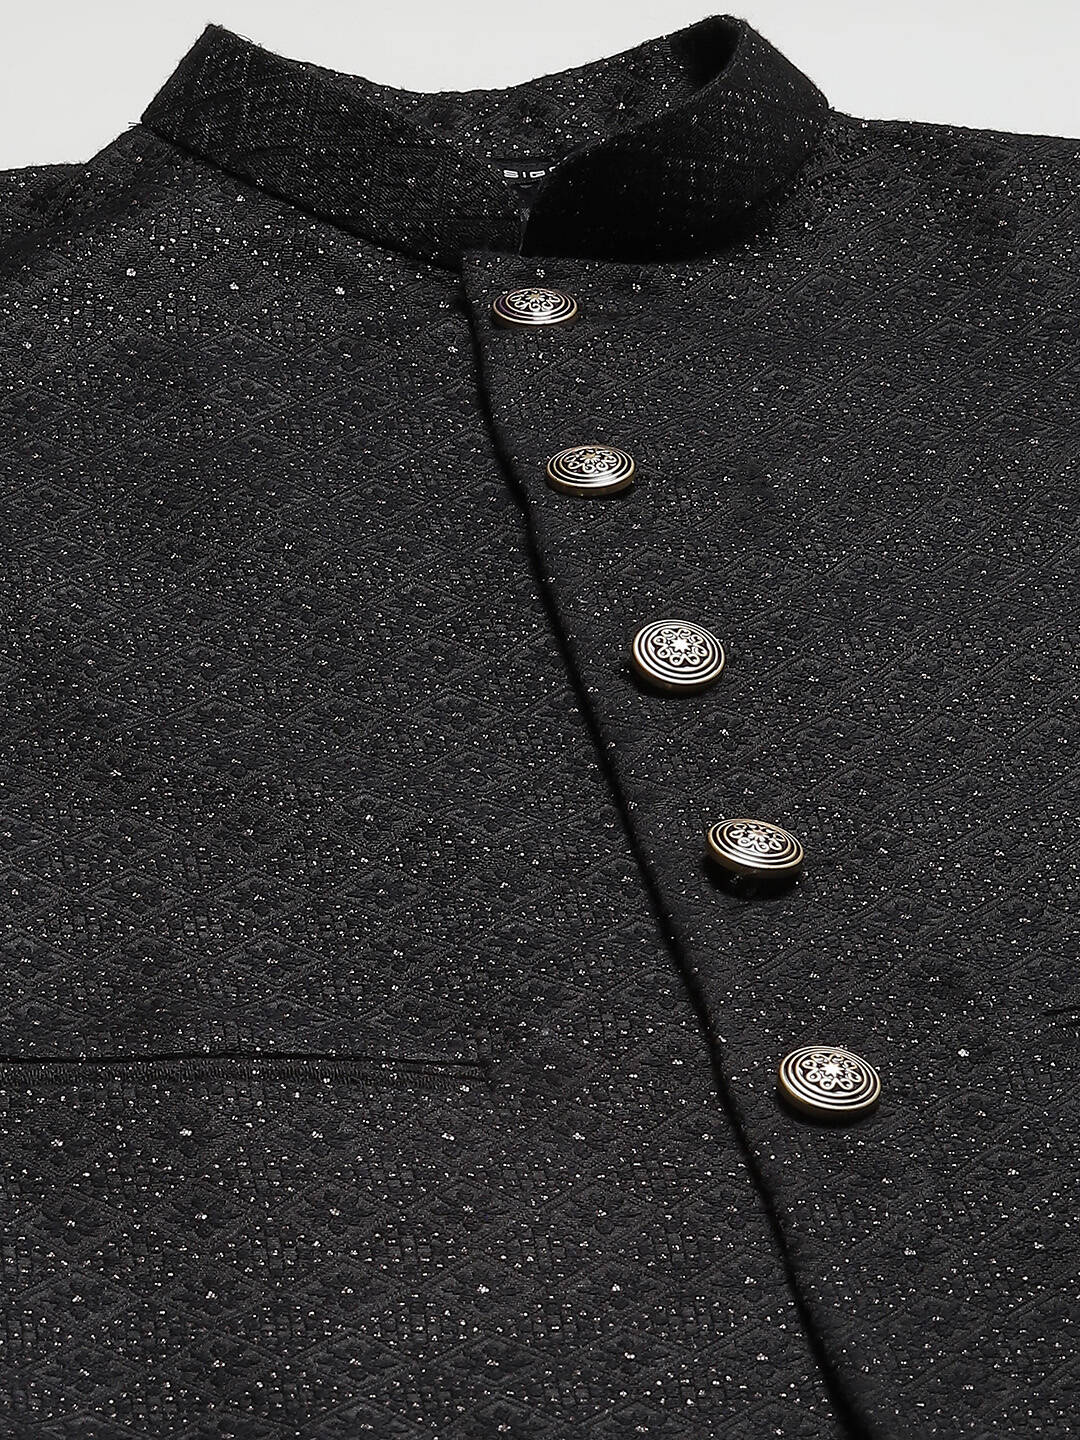 Men Black & White Woven Jacquard Neharu jacket